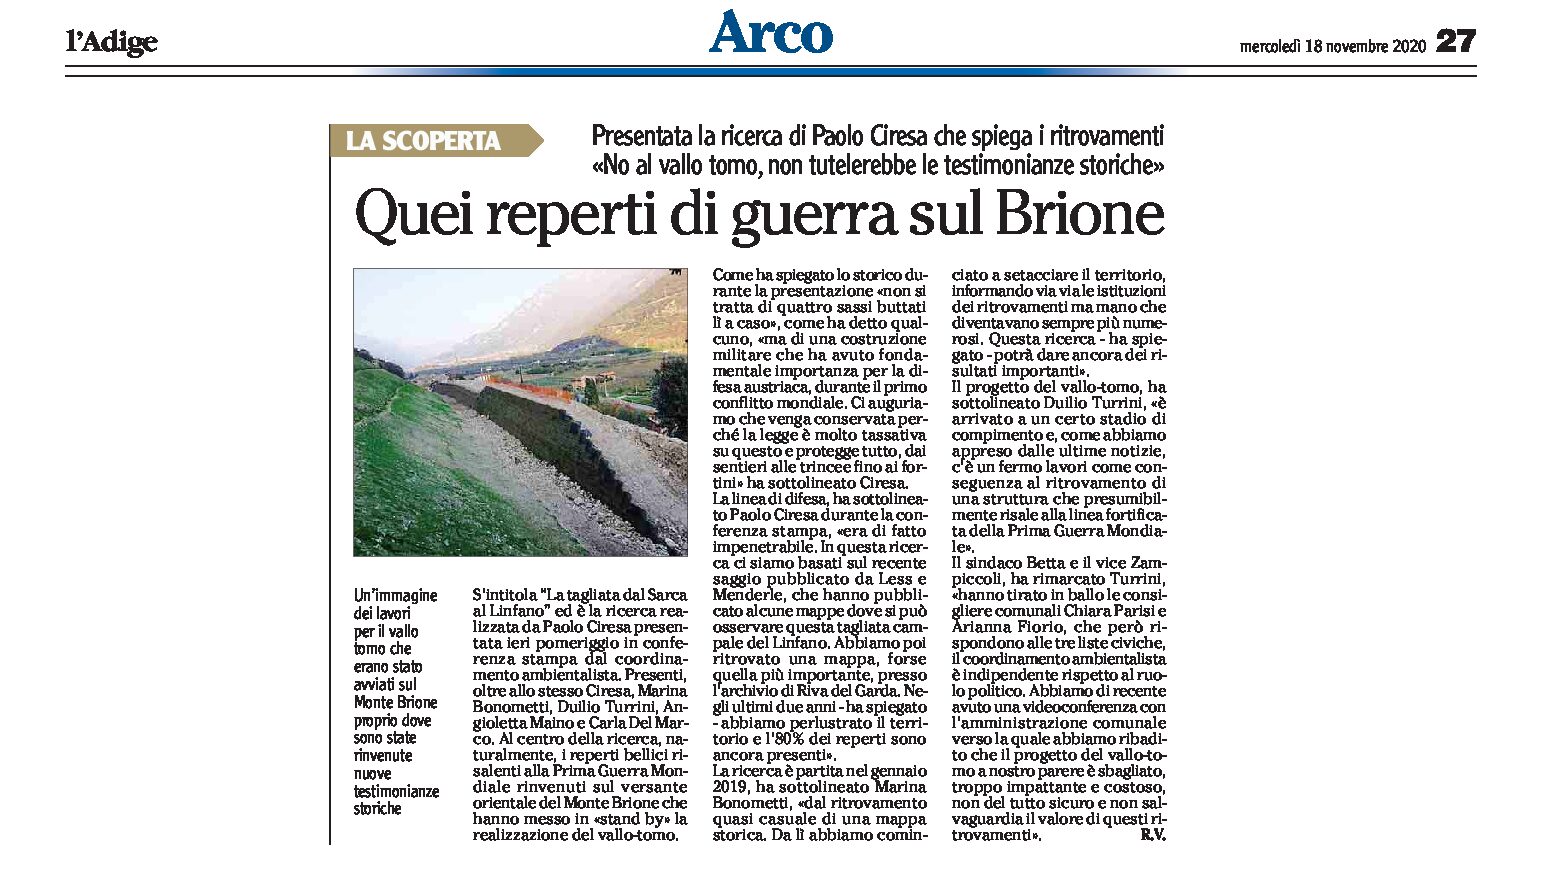 Arco, vallo tomo: presentata la ricerca dello storico Ciresa sui reperti di guerra sul Brione